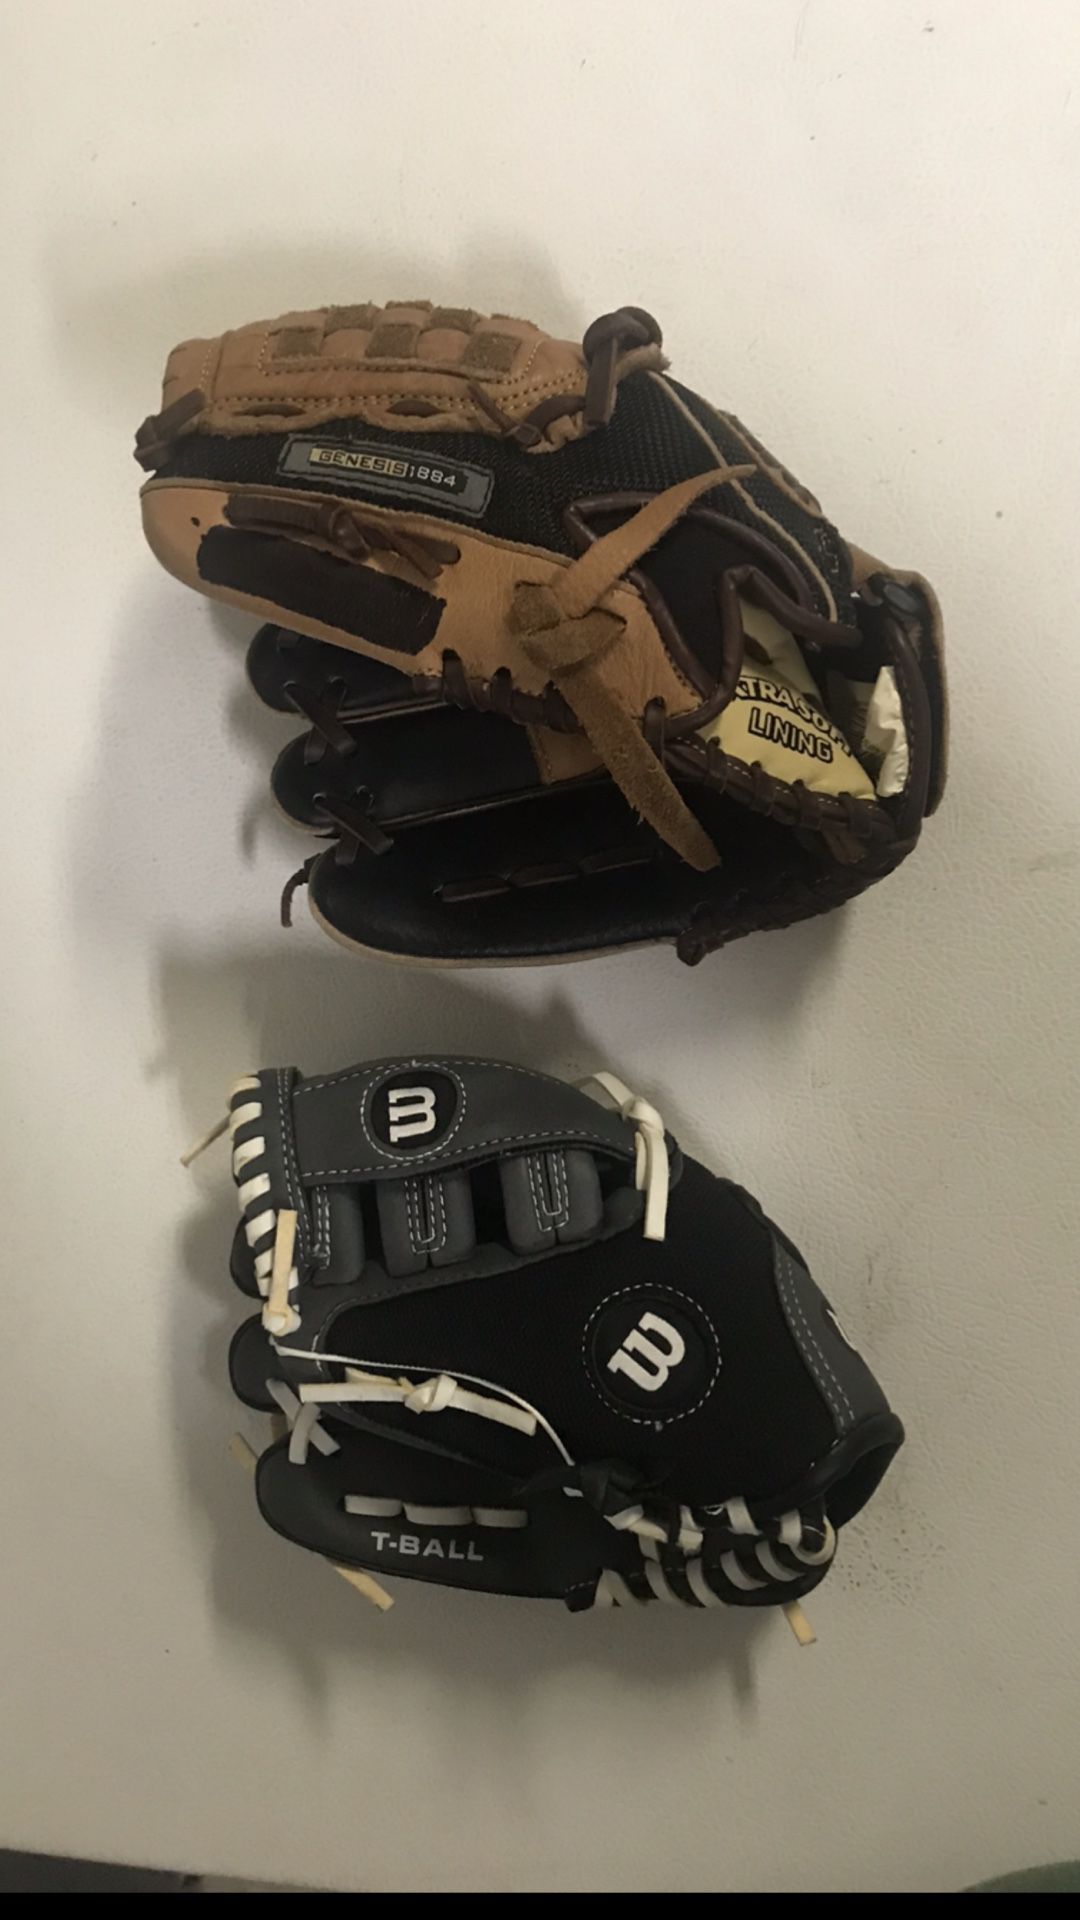 Baseball Gloves Sizes 9 & 10. $15 each or $25 For Both. 